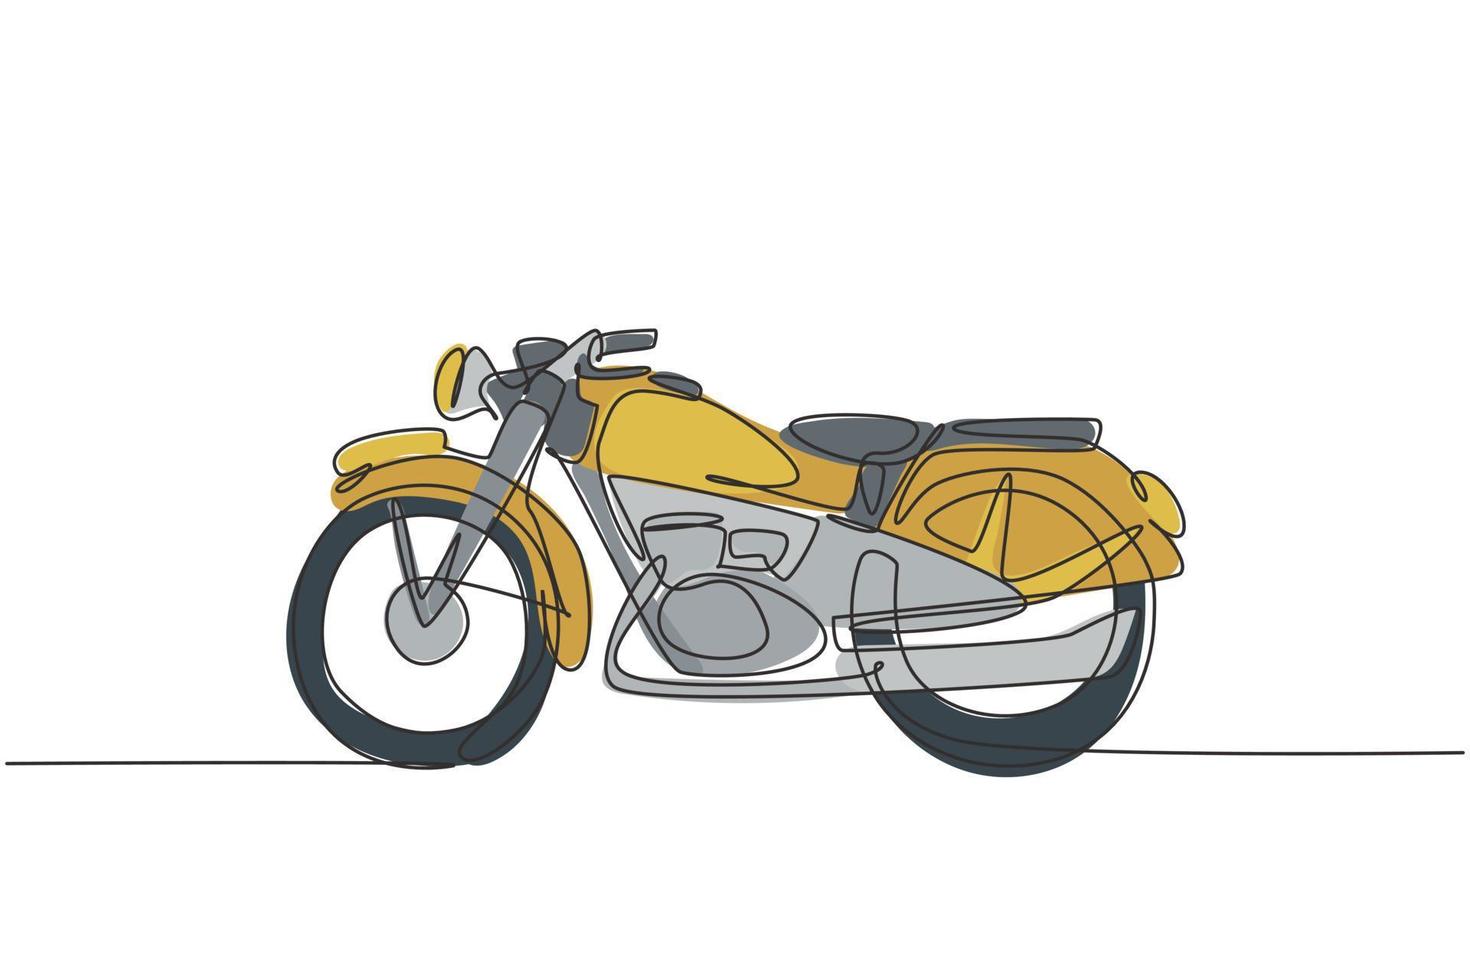 dessin au trait continu unique de l'ancien symbole de moto vintage classique. Concept de transport moto rétro une ligne dessiner illustration graphique vectorielle de conception vecteur